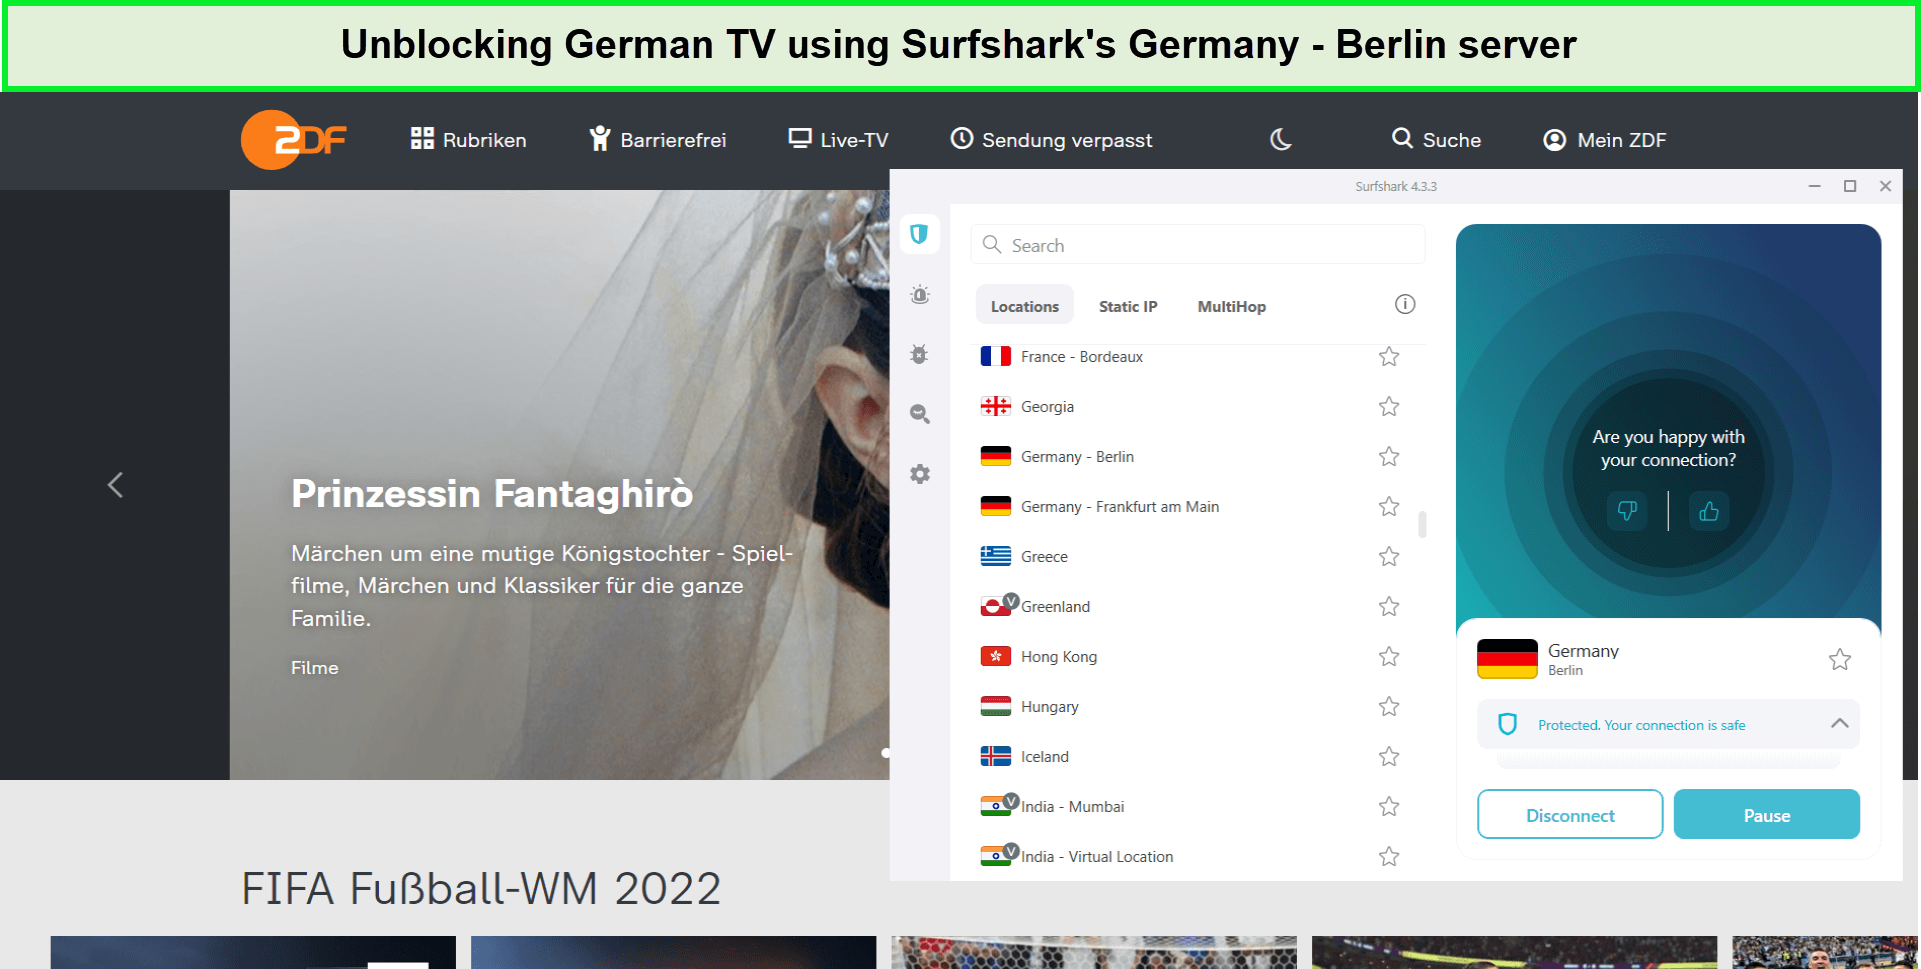 surfshark-unblock-german-tv-For Spain Users